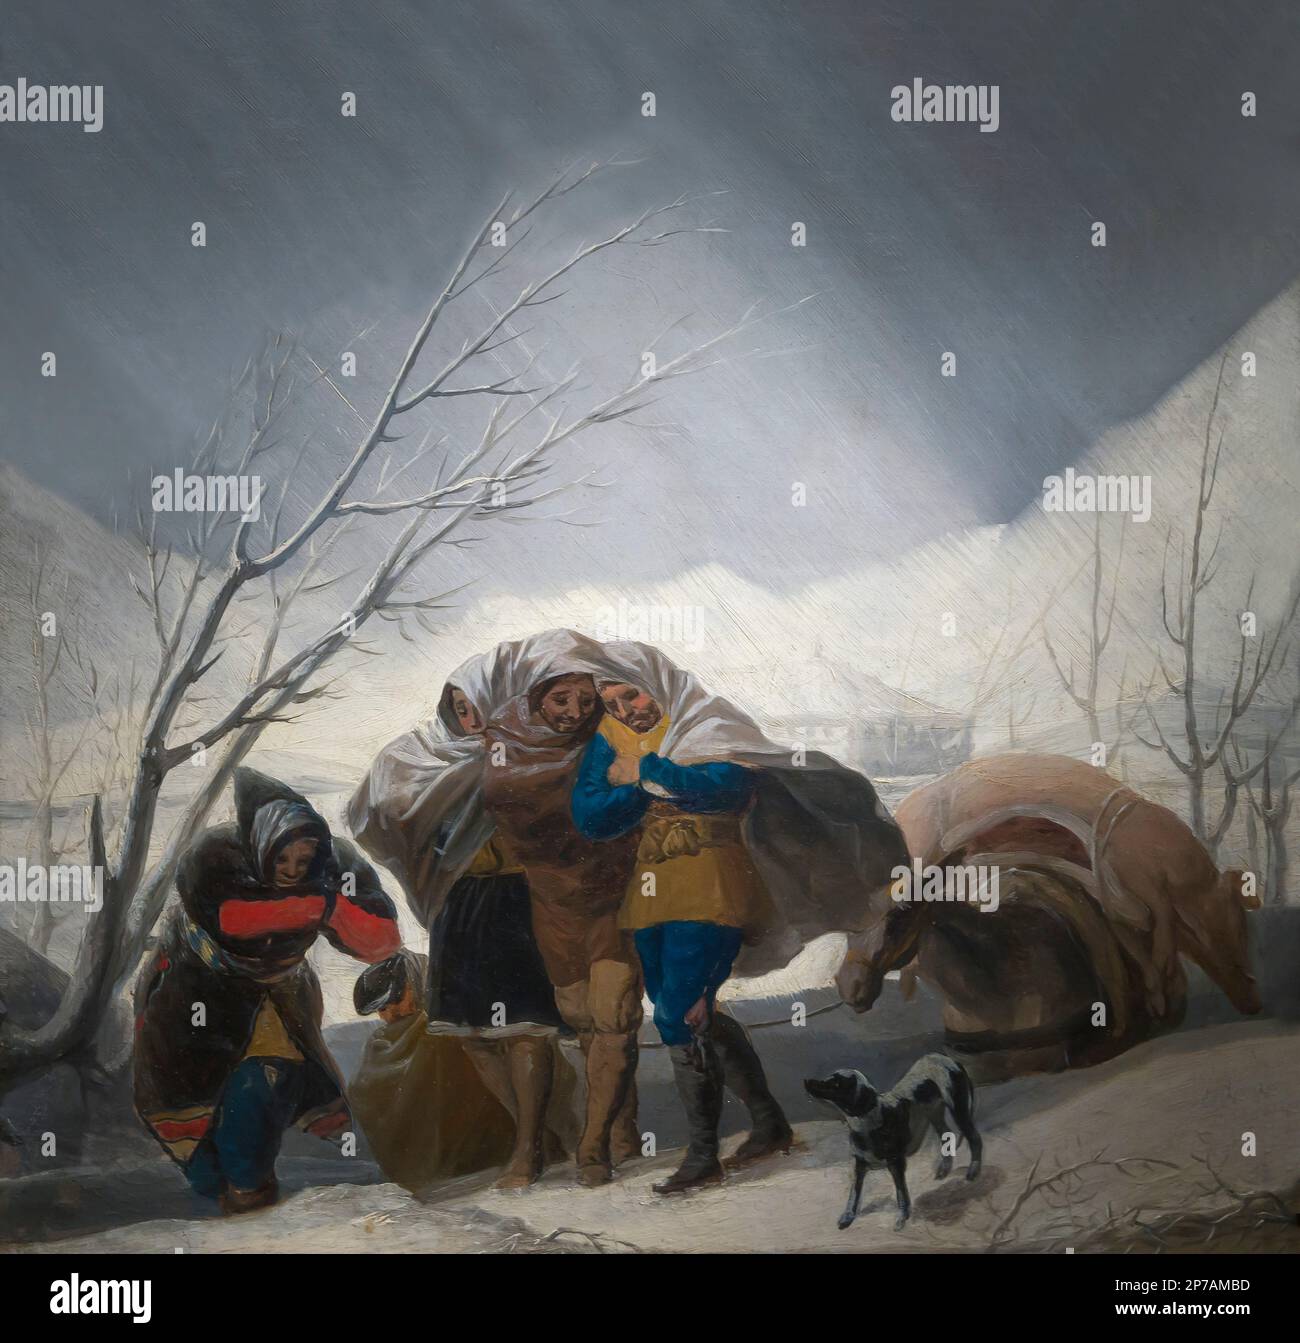 Scène d'hiver, Francisco Goya, vers 1786, l'Art Institute of Chicago, Chicago, Illinois, USA, Amérique du Nord, Banque D'Images